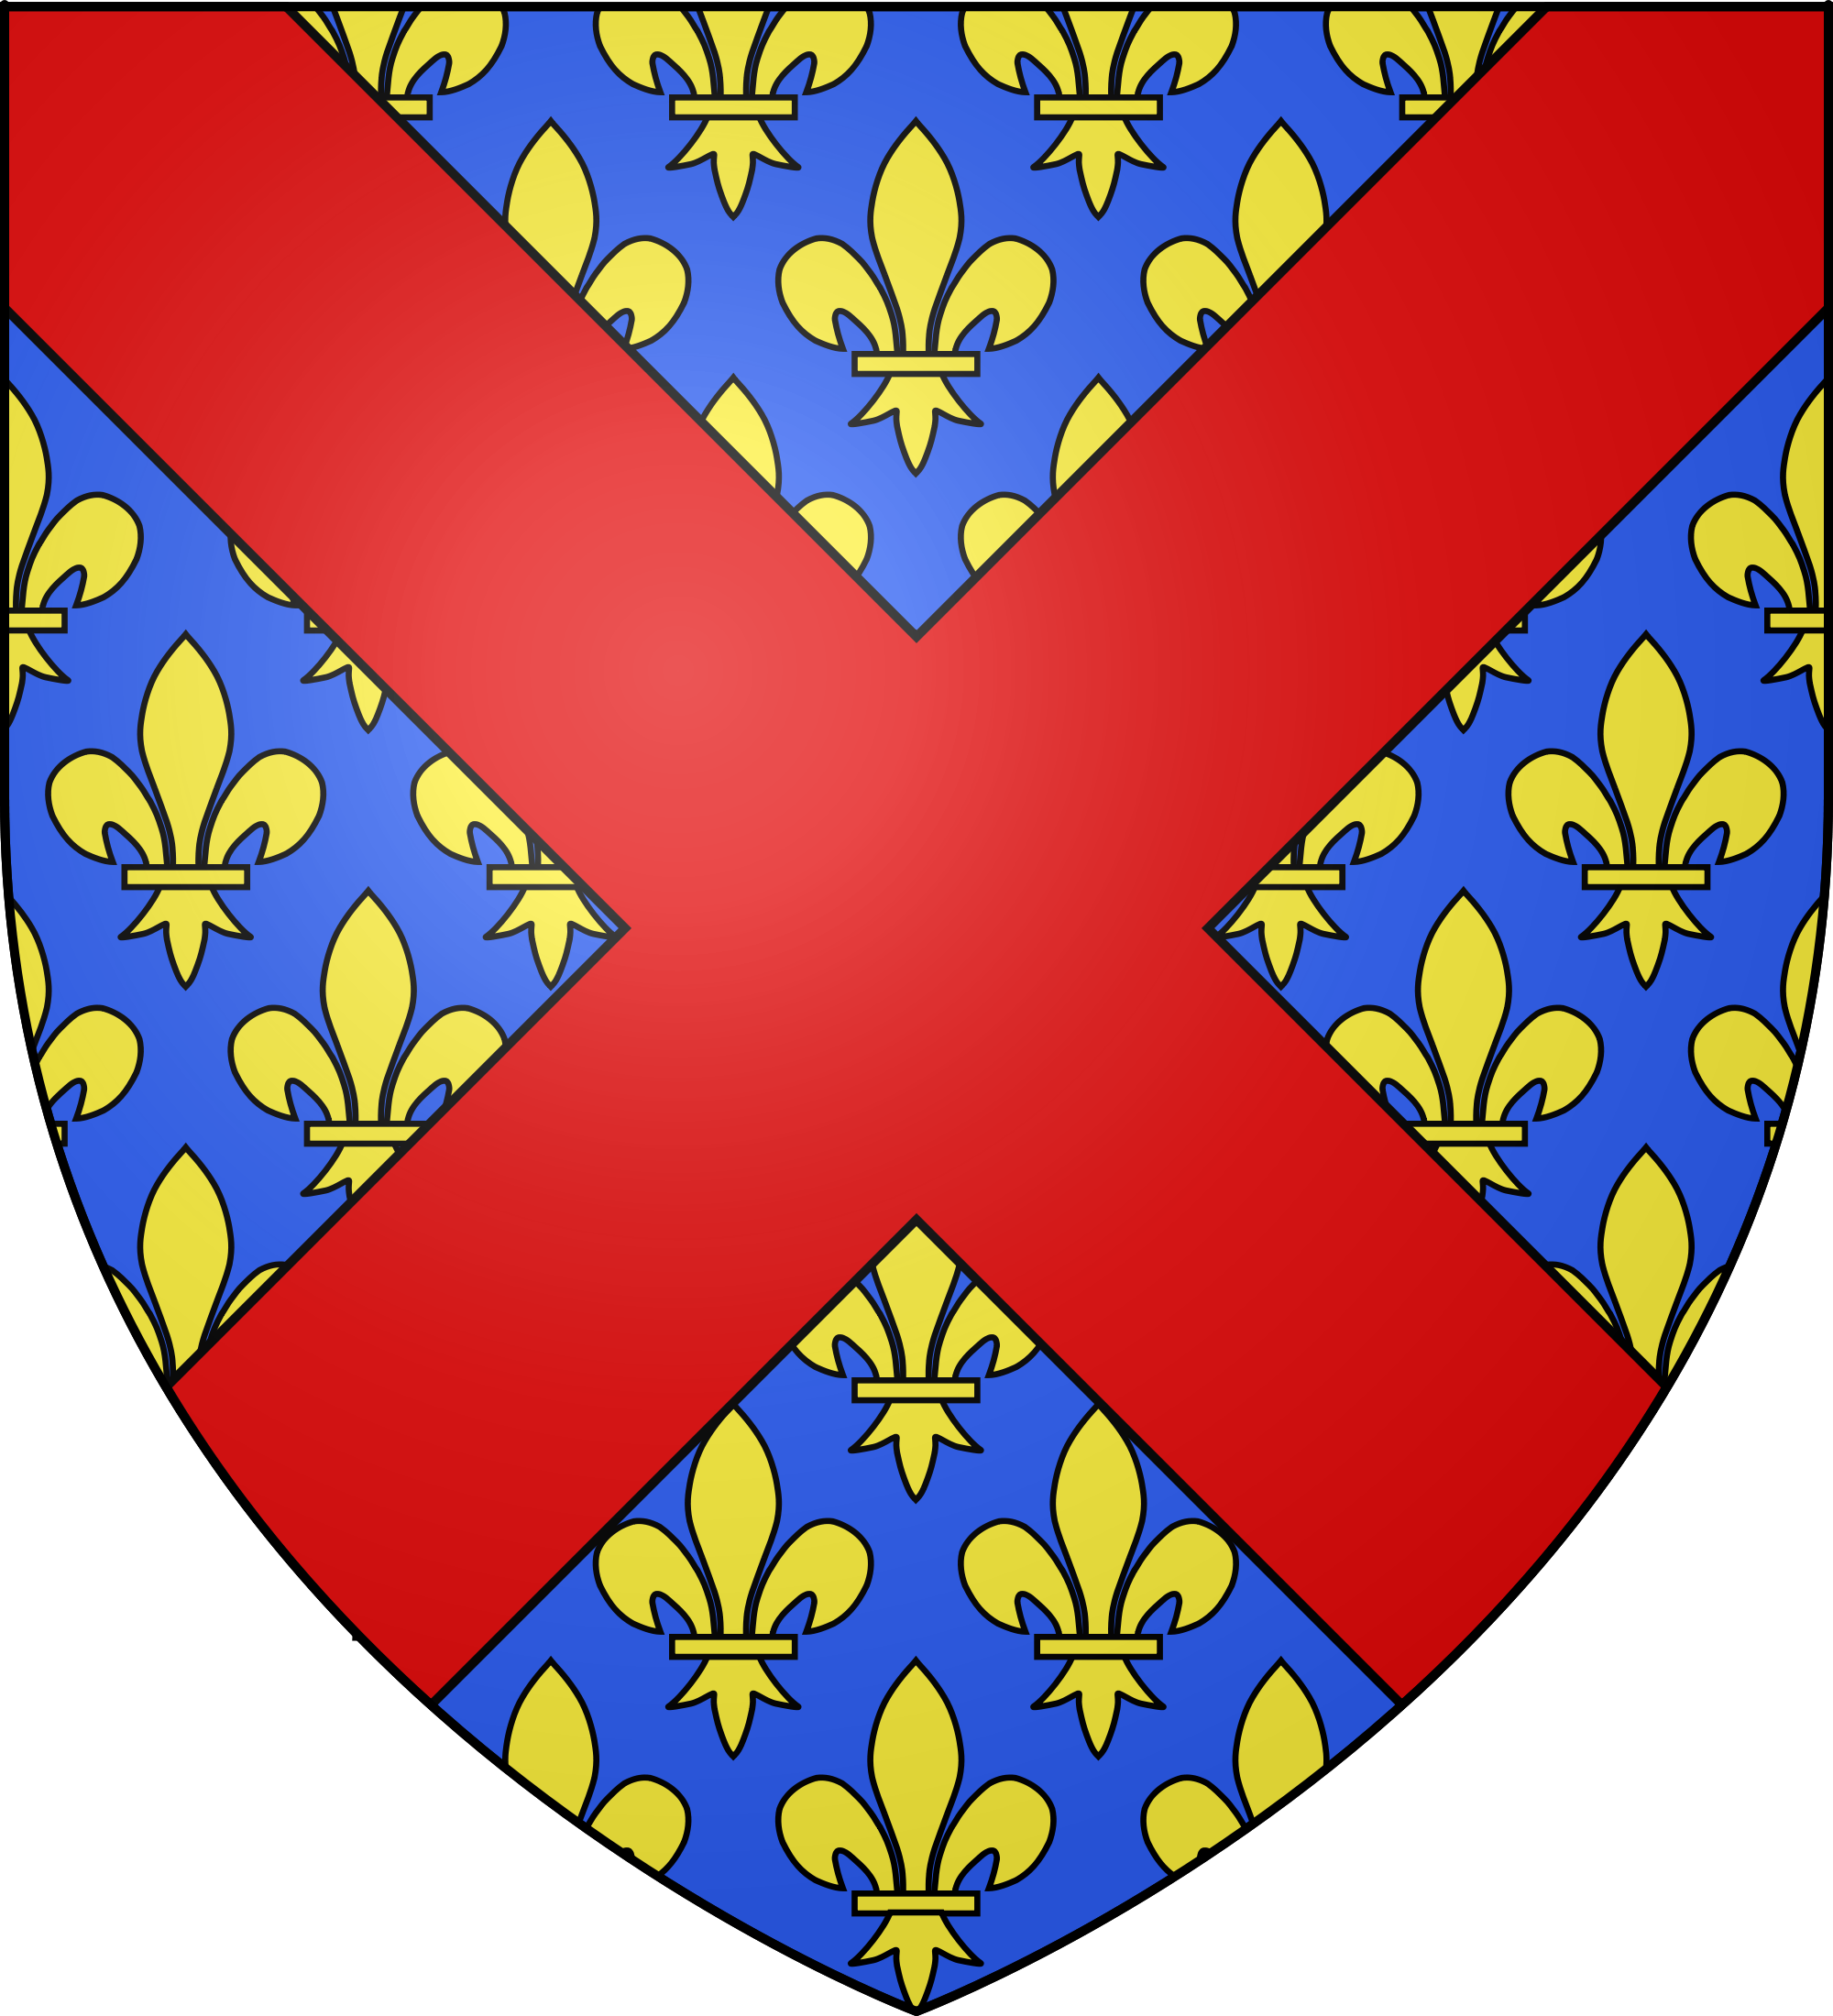 Wappen von Langres